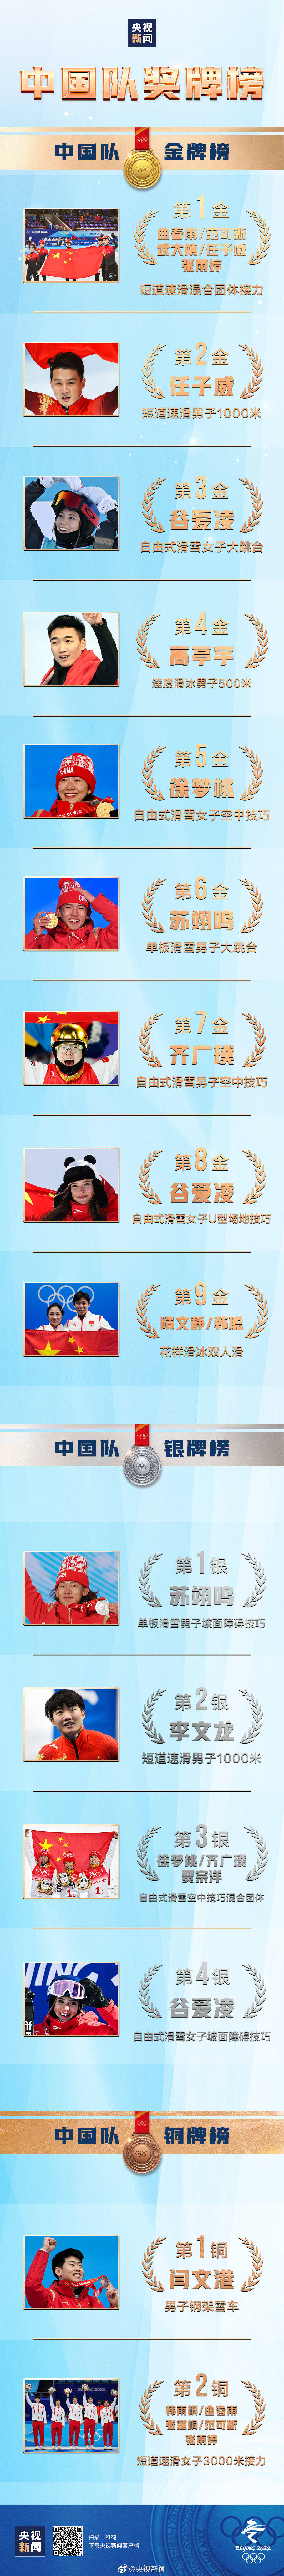 钢架|北京冬奥会所有比赛结束 中国队15枚奖牌收官